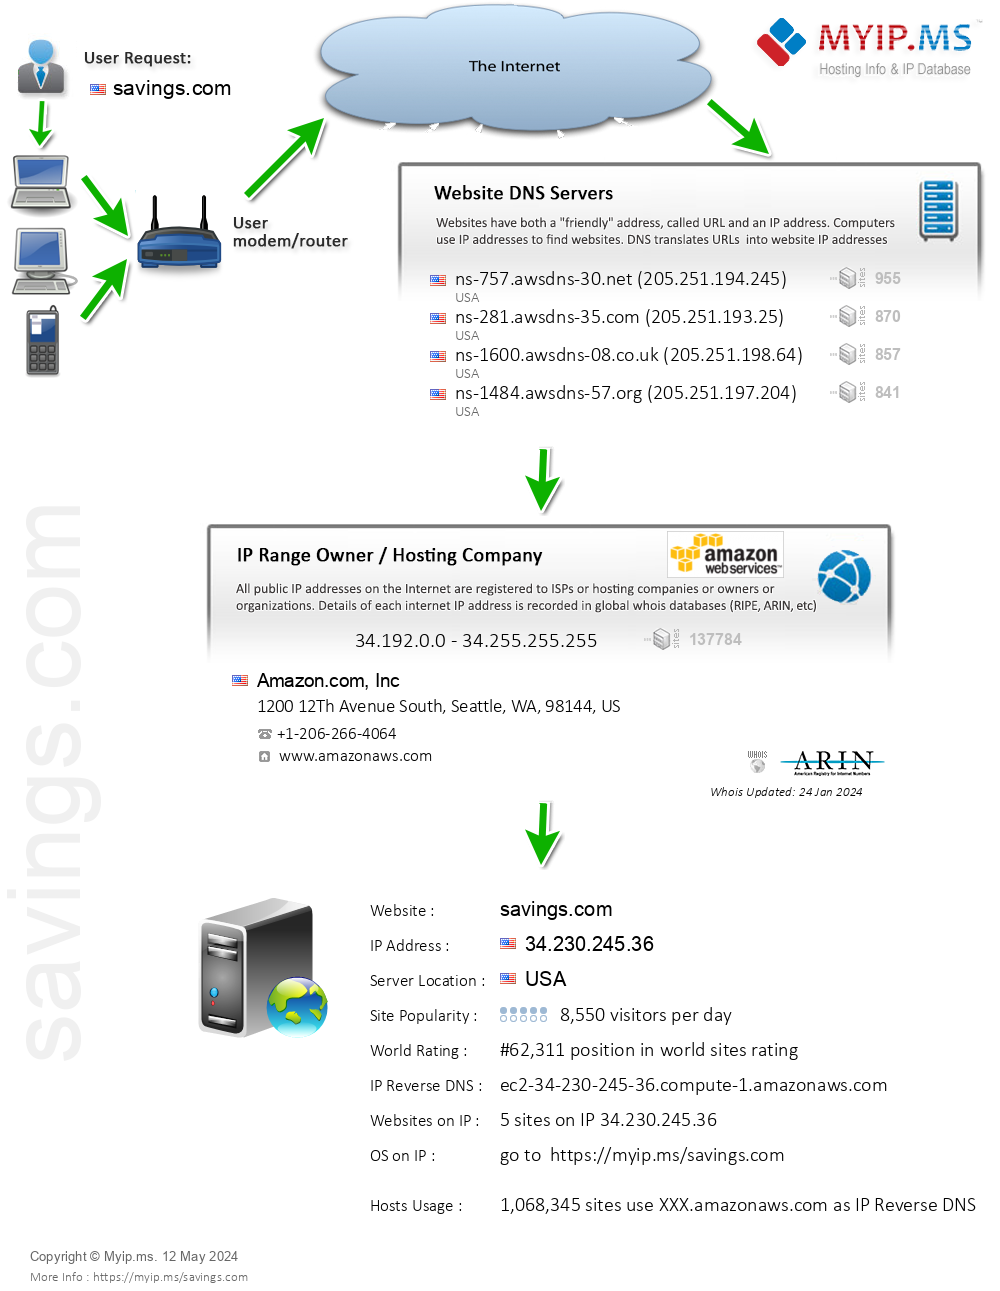 Savings.com - Website Hosting Visual IP Diagram